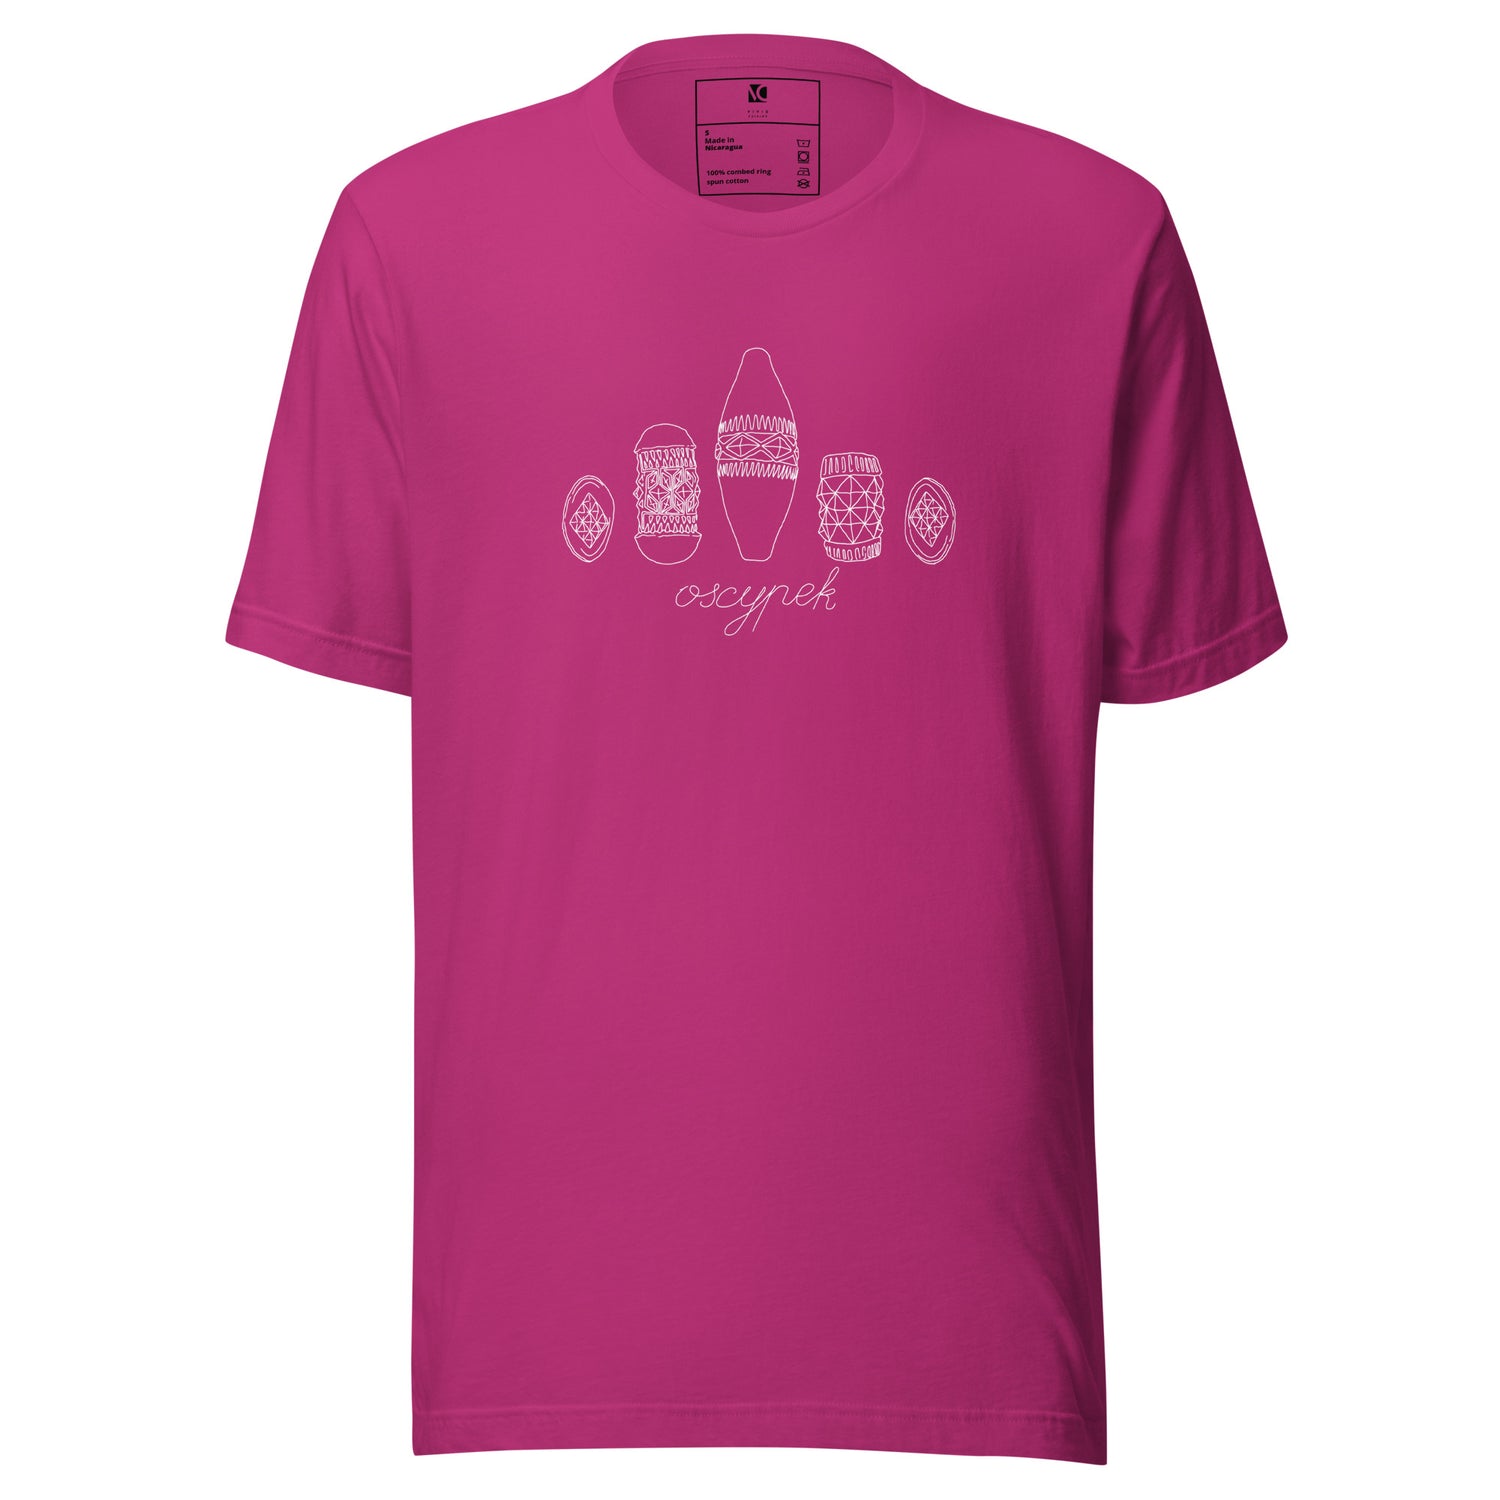 Oscypek (W) - Unisex T-Shirt